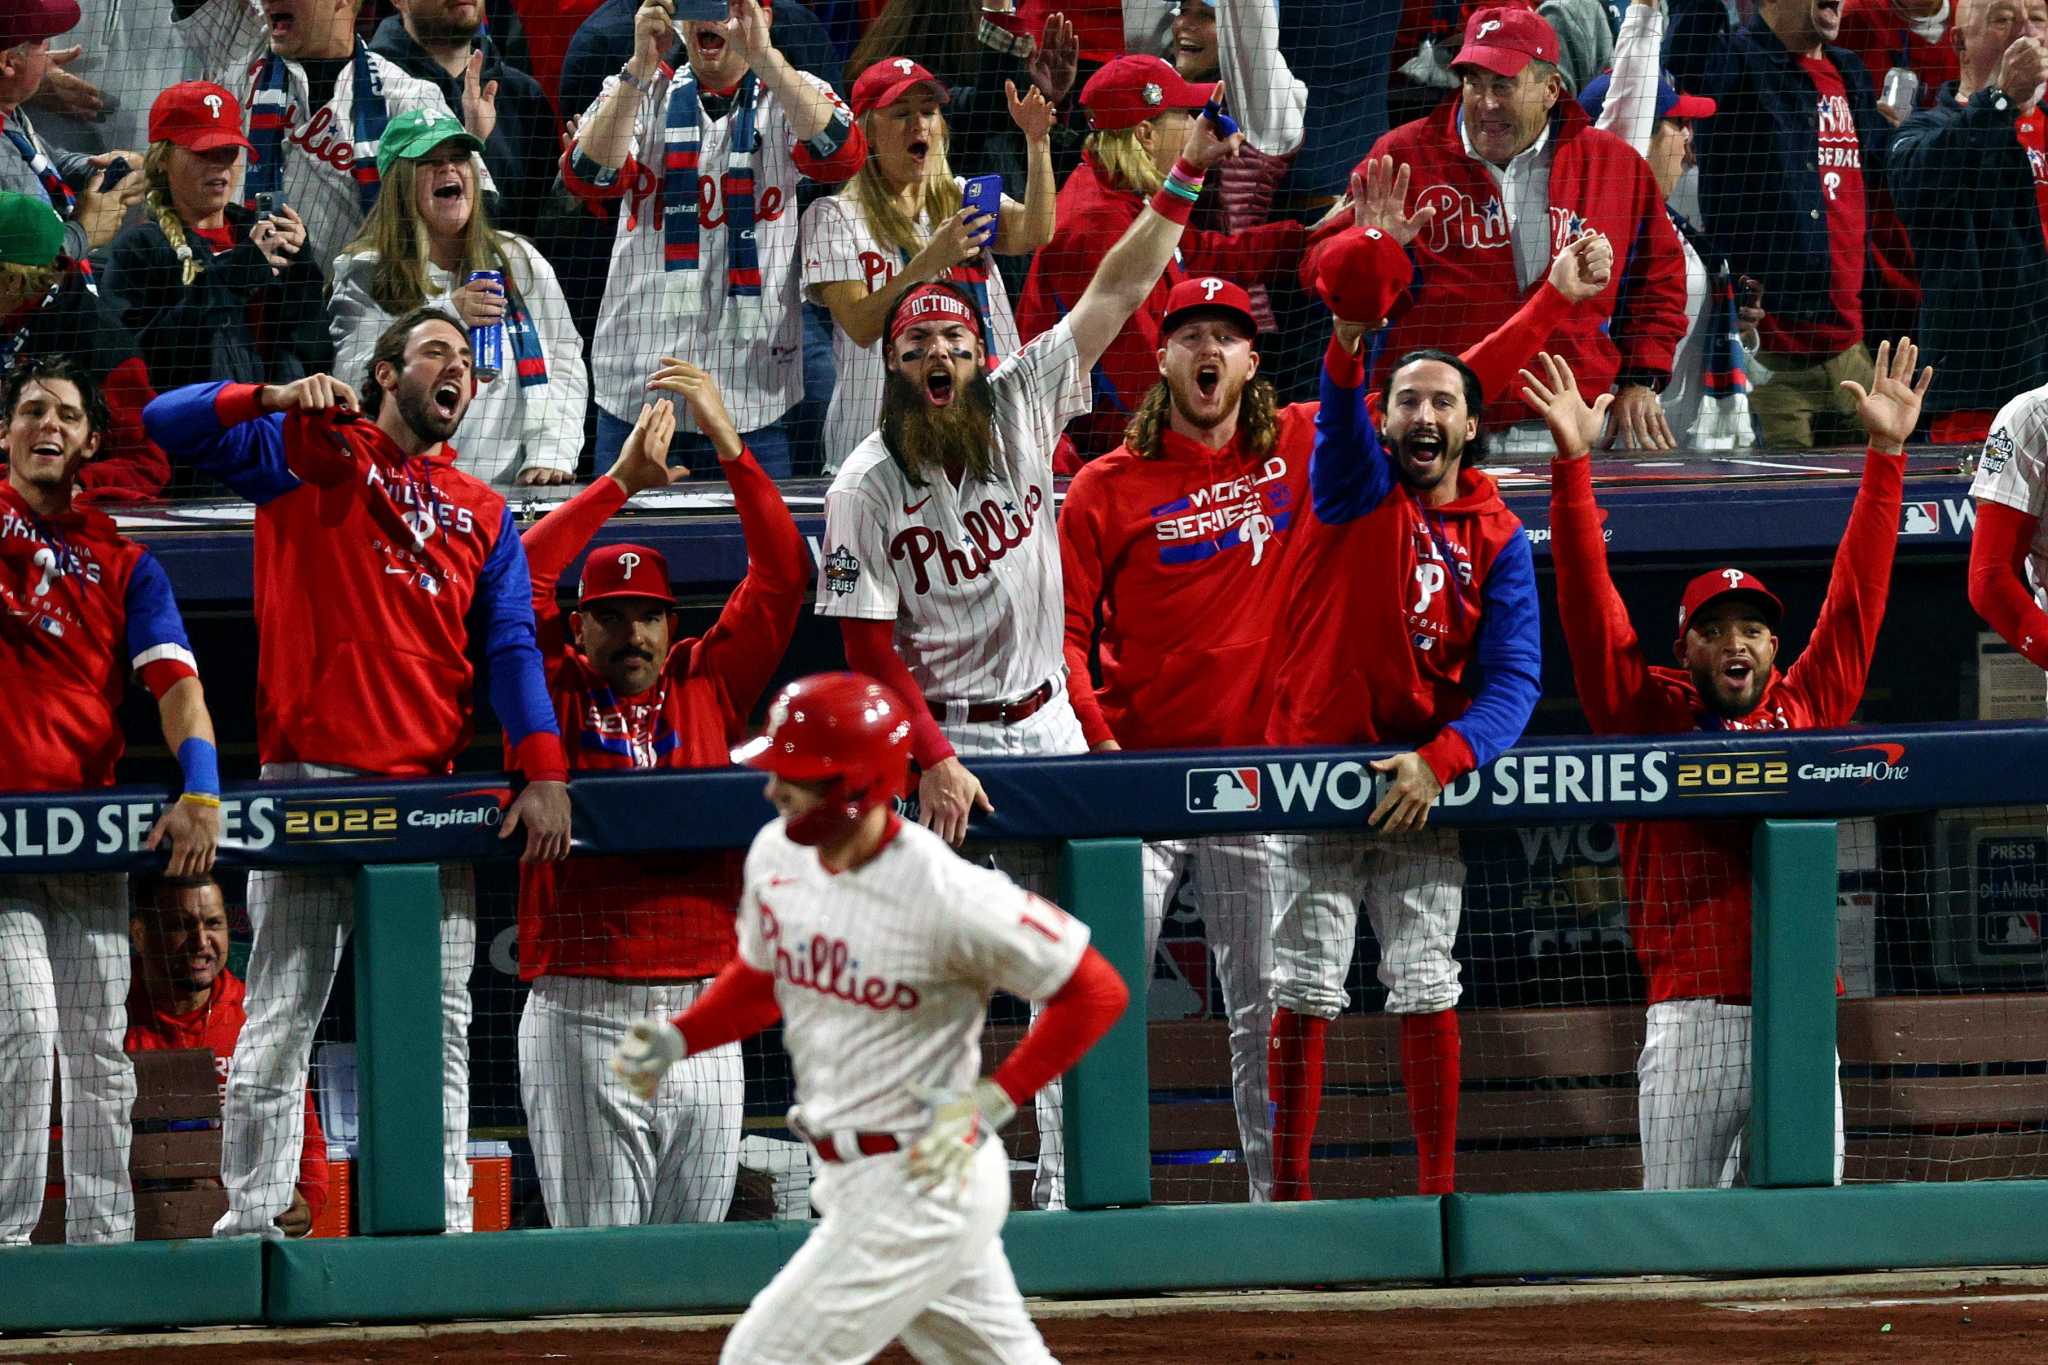 Bryce Harper, Phillies tie World Series mark with 5 HR, top Astros